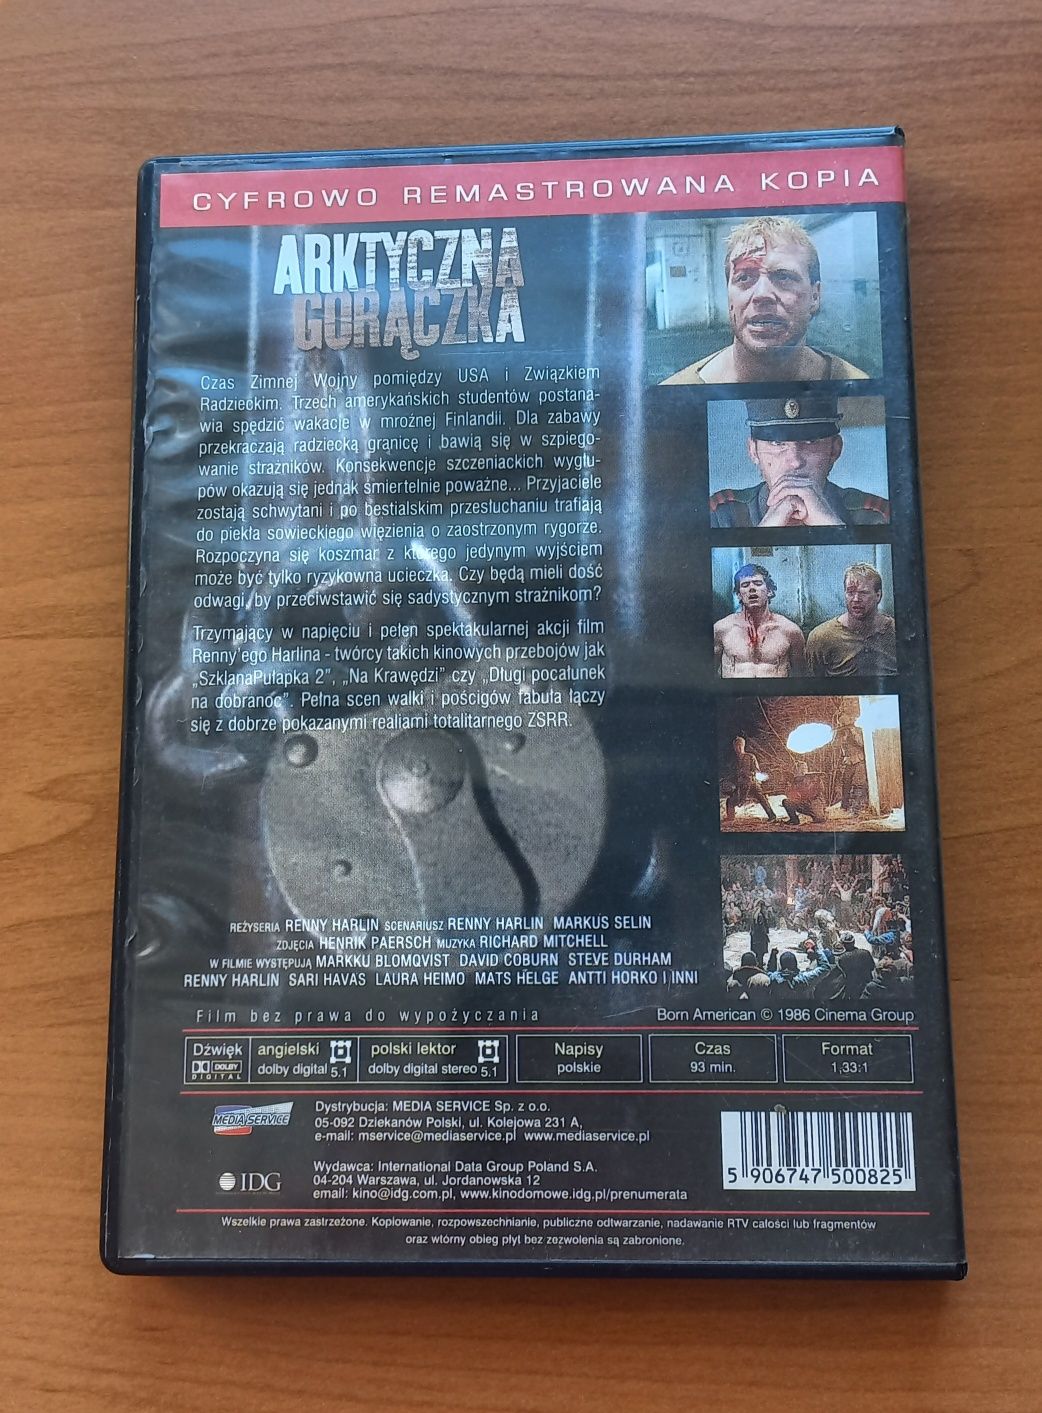 Film "Arktyczna gorączka" DVD